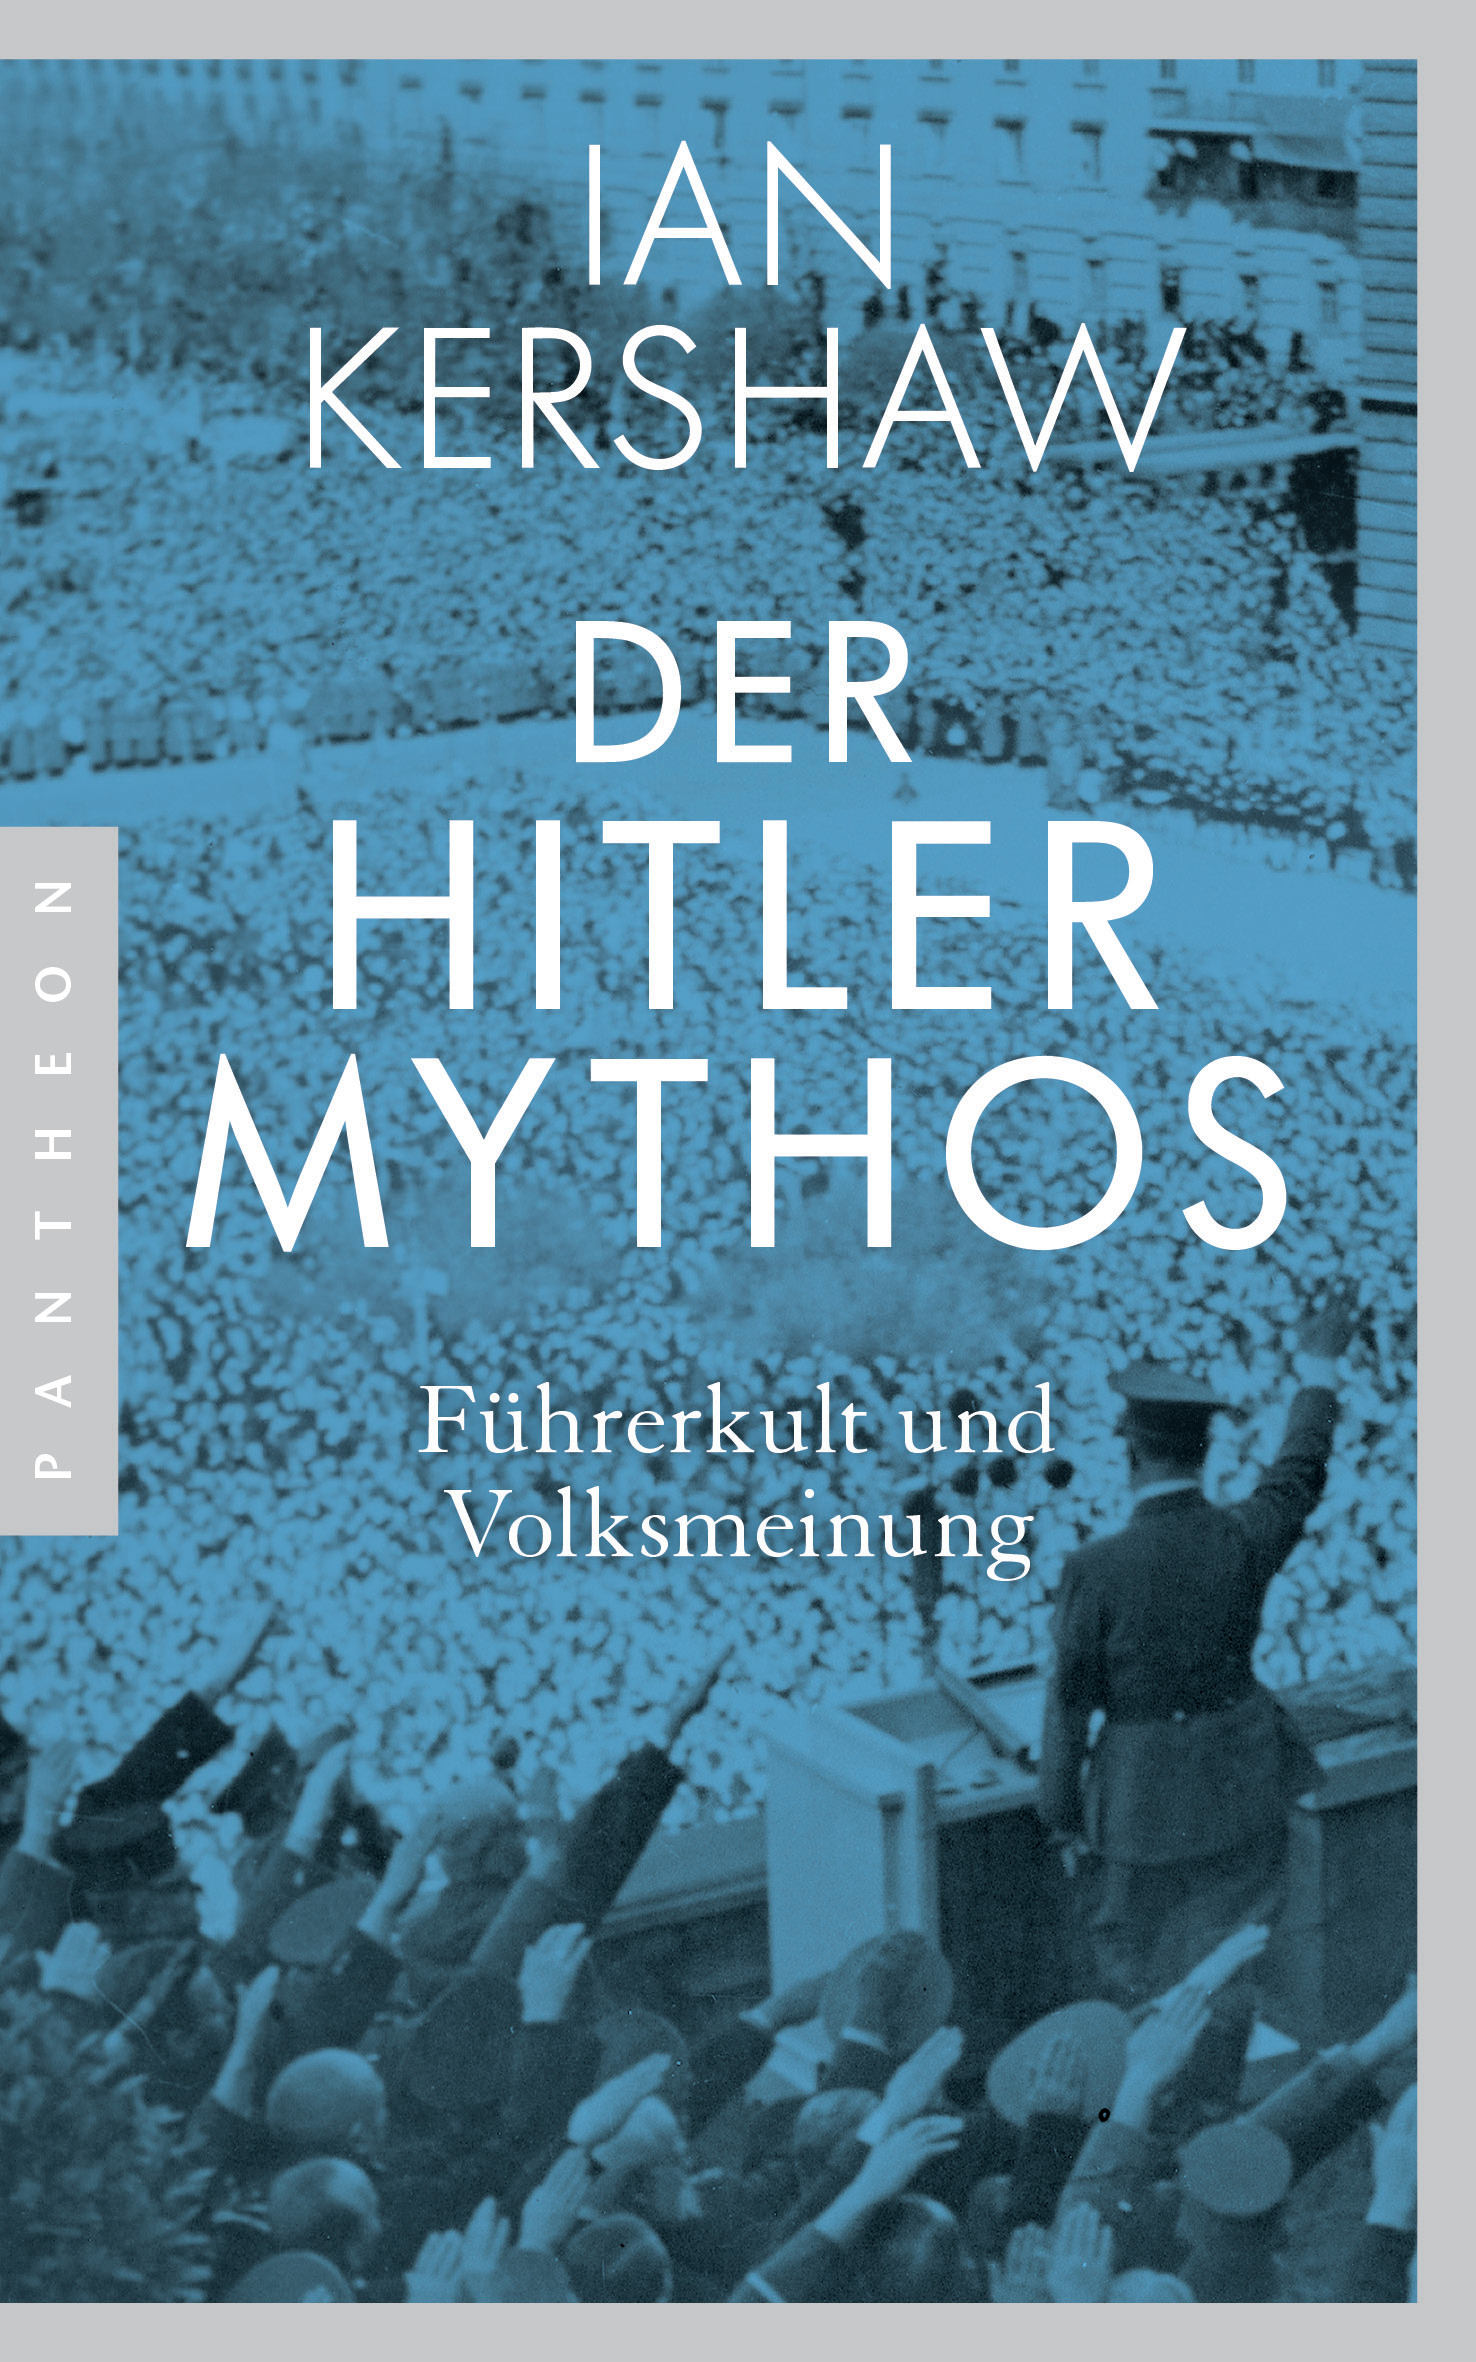 Ian Kershaw: Der Hitler-Mythos. Führerkult und Volksmeinung